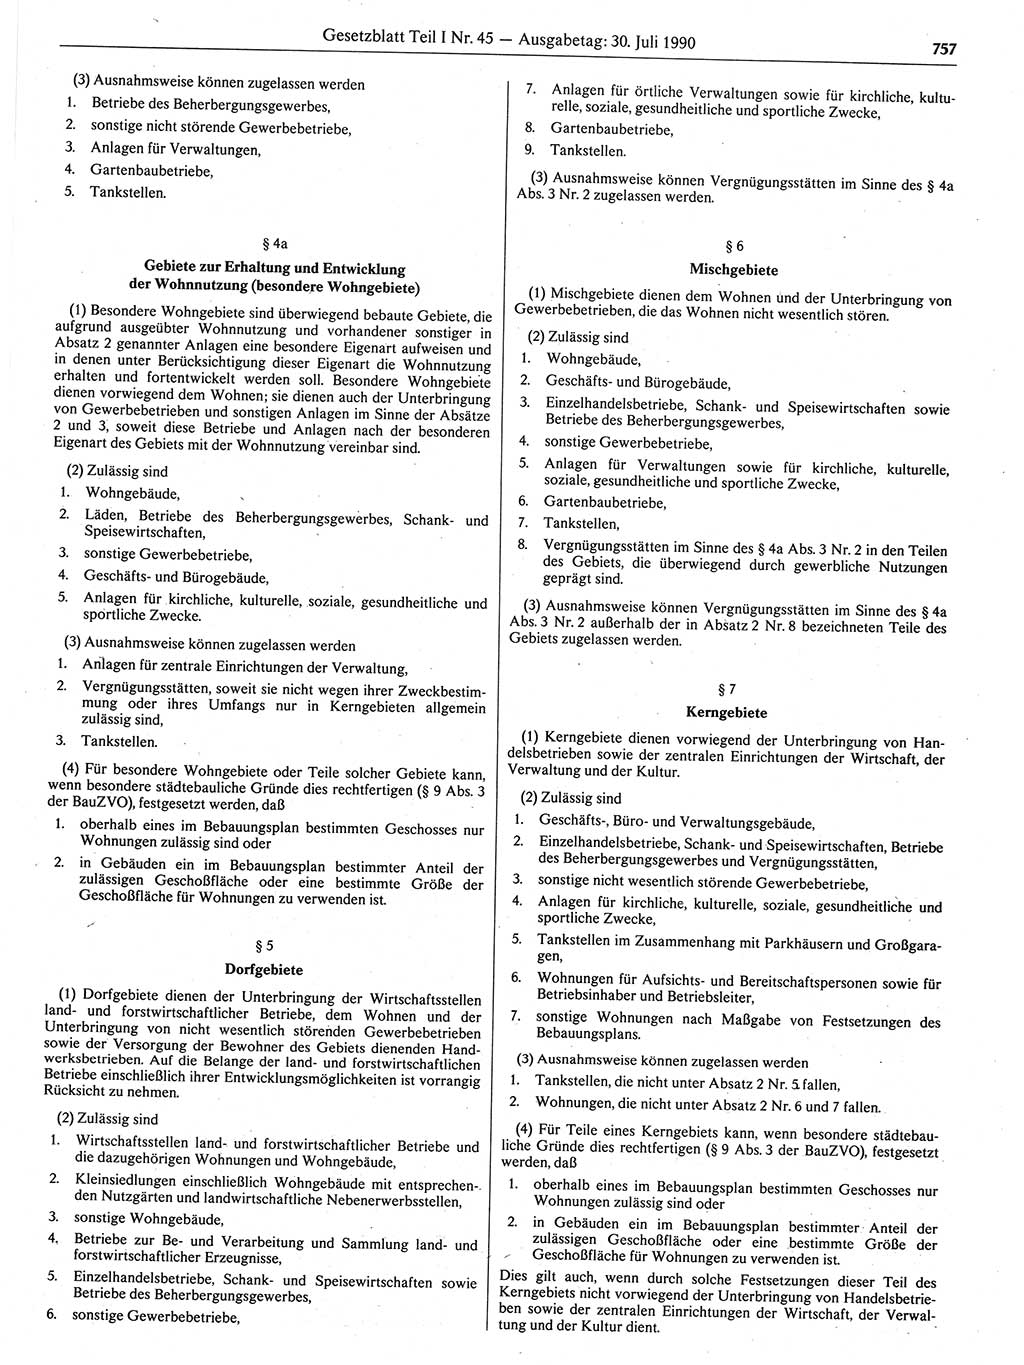 Gesetzblatt (GBl.) der Deutschen Demokratischen Republik (DDR) Teil Ⅰ 1990, Seite 757 (GBl. DDR Ⅰ 1990, S. 757)